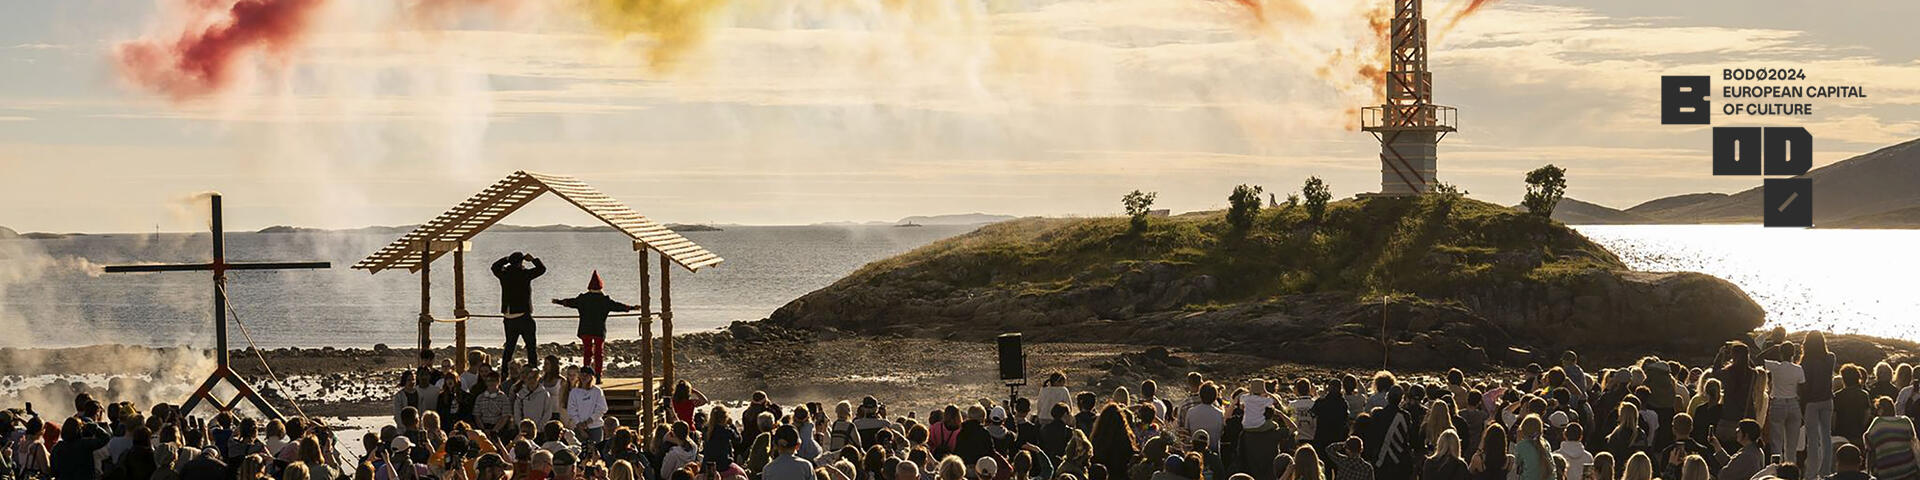 Bilde fra folkefest i Breivika i Bodø. Mange mennesker som ser på og fyrverkeri/farger. Hav og himmel. Bodø2024 sin logo er satt inn til høyre i bildet. Bildet lenker videre til Bodø2024s nettside. 